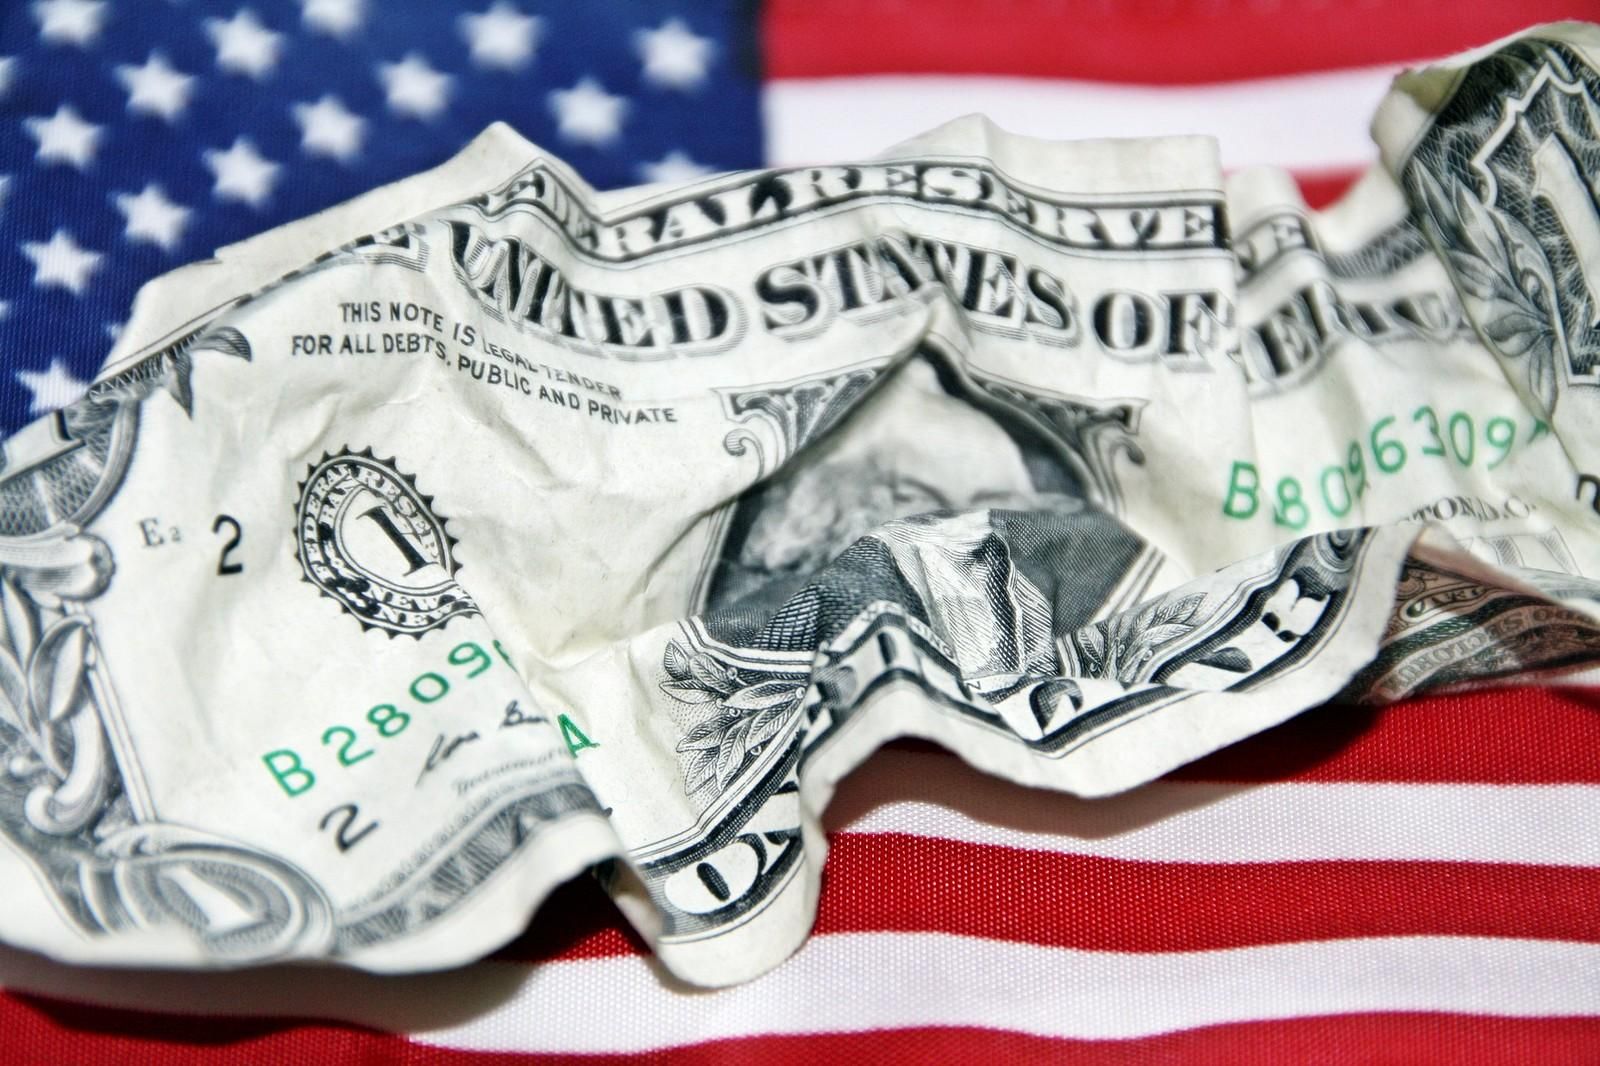 Деньги на выплаты есть до декабря: в США одобрили повышение "долговой потолка" госдолга - Экономические новости Украины - Экономика